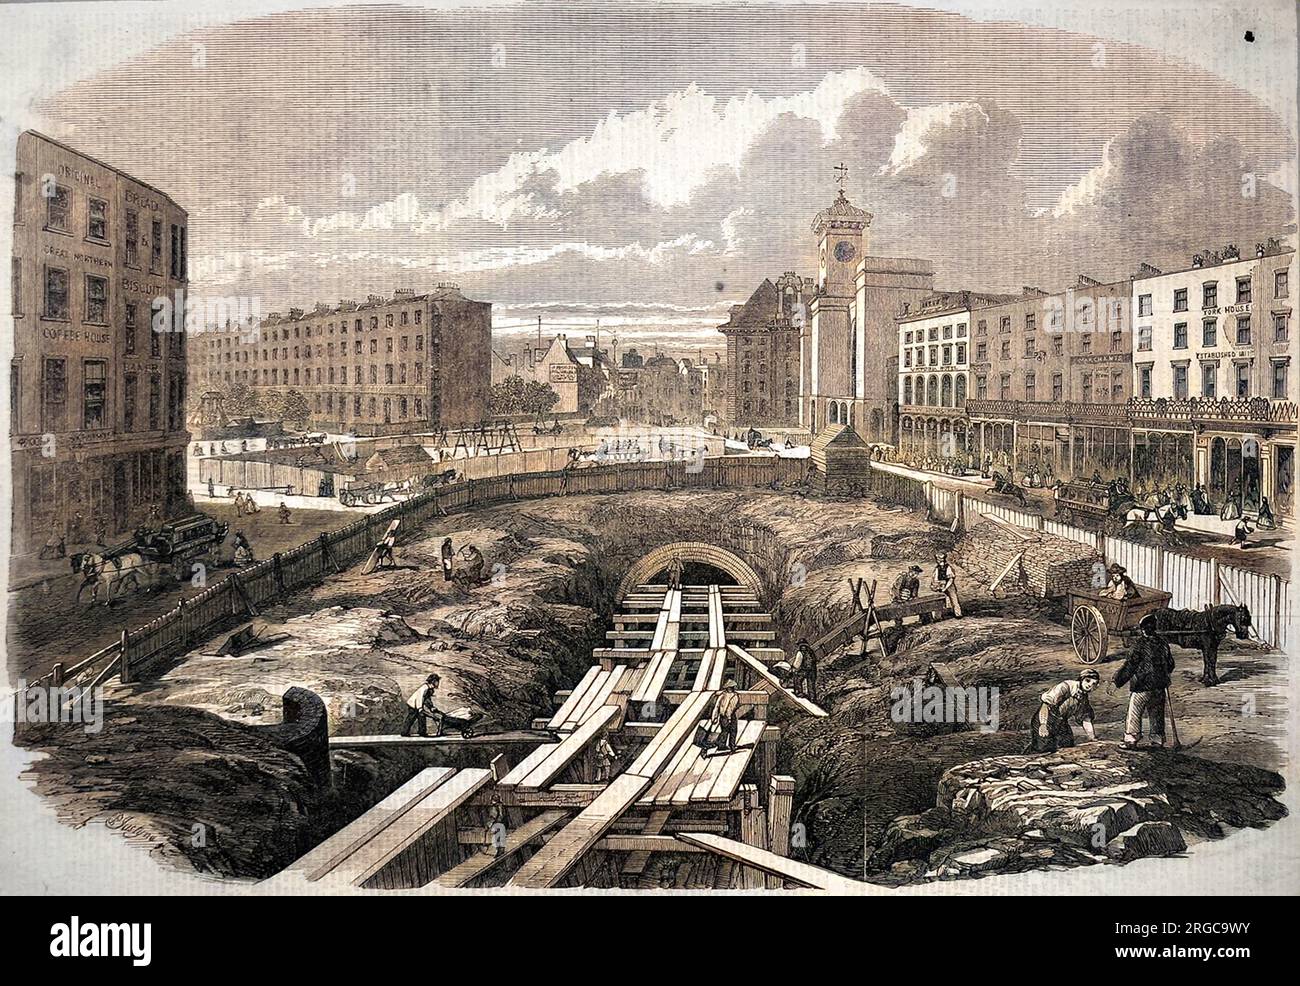 Les travaux de construction en cours à King's Cross, pour accueillir une partie du chemin de fer souterrain Mertropolitain. La première section du métro a été achevée en 1863, et sera bientôt suivie d'une extension à Westminster. Des chenilles à voie large et standard ont été utilisées. Banque D'Images